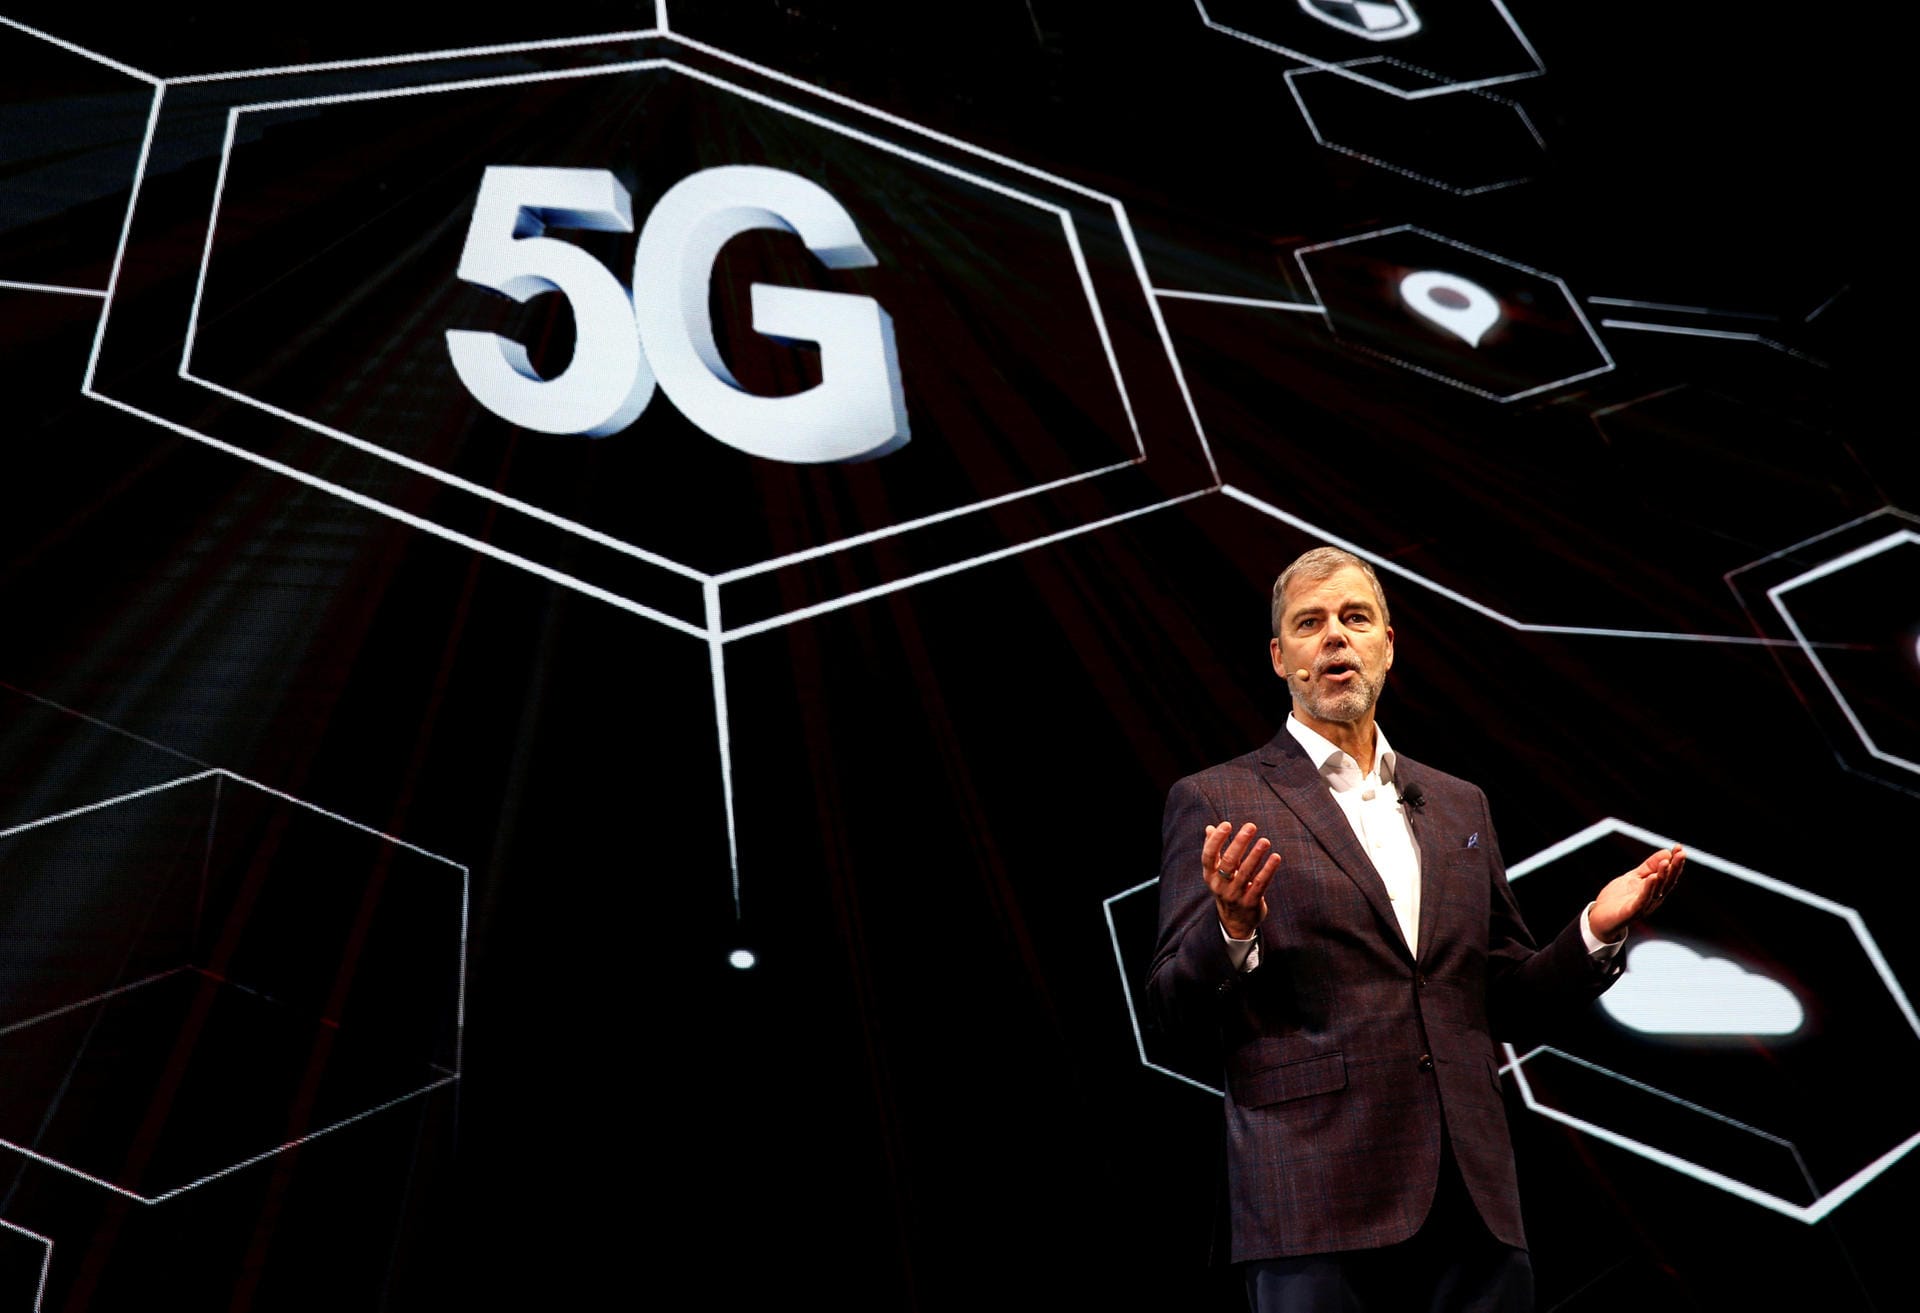 Auf der CES selbst kündigte LG zudem ein 5G-fähiges Mobiltelefon an. Es wurde in Zusammenarbeit mit dem Chiphersteller Qualcomm entwickelt und soll noch 2019 auf den Markt kommen.